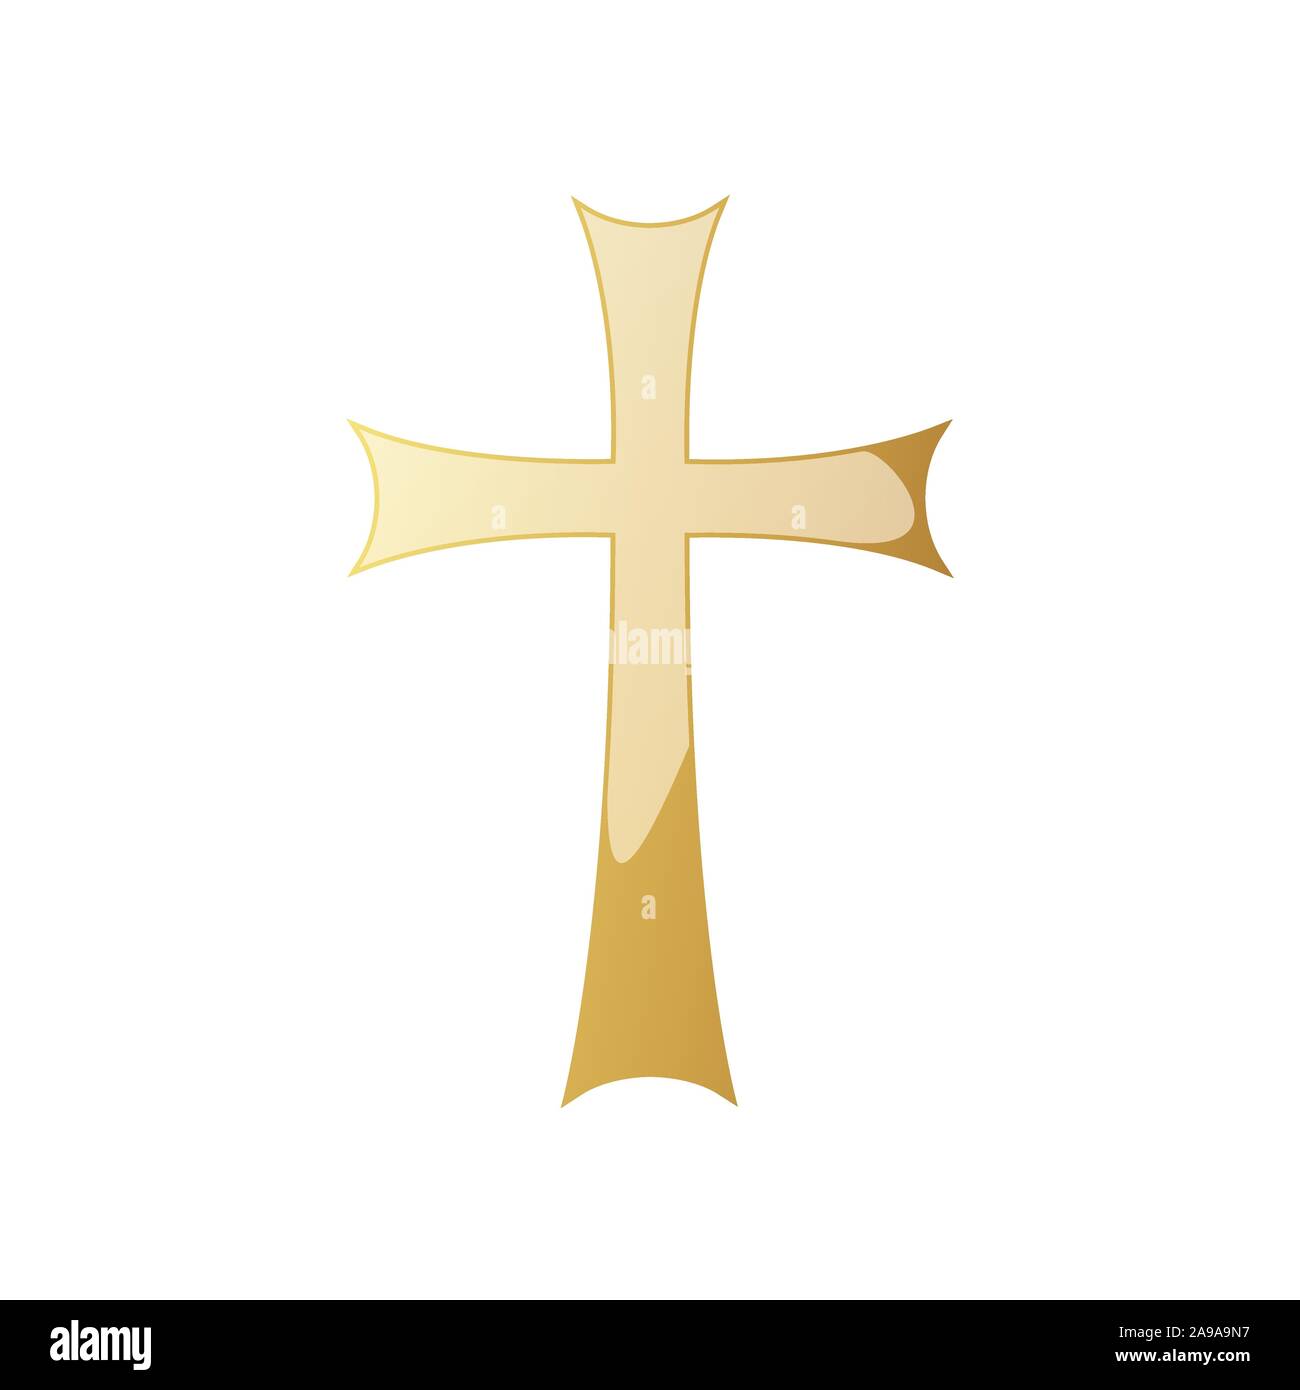 Golden Christian cross icon. Vector illustration. Golden Christian cross isolated on white background. Stock Vector